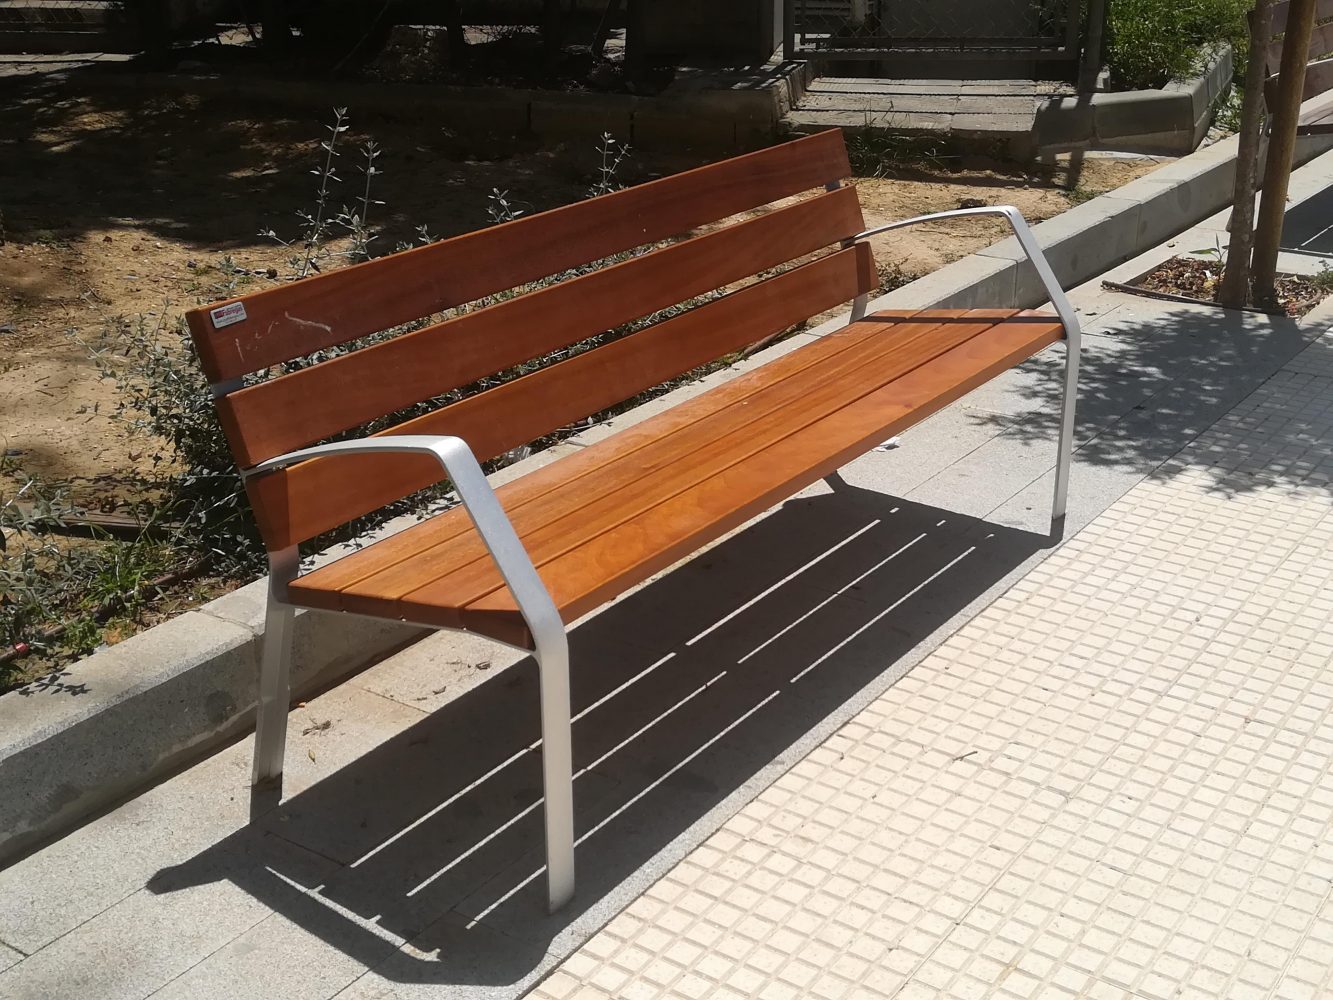 Mobiliario urbano Huelva